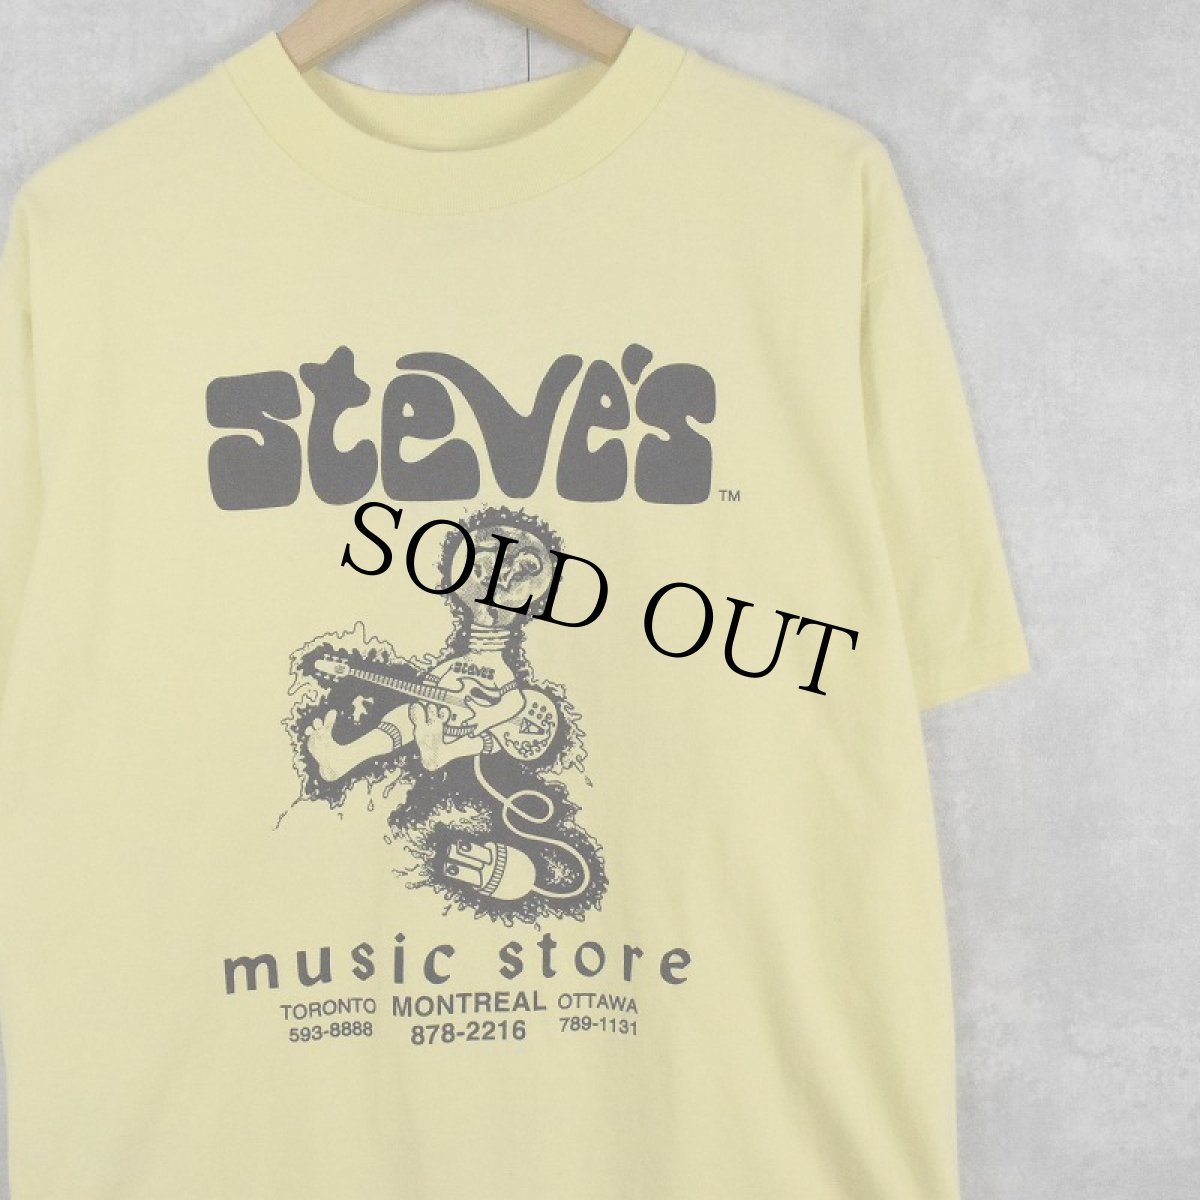 画像1: 90's Steve's Music Store USA製 プリントTシャツ M (1)